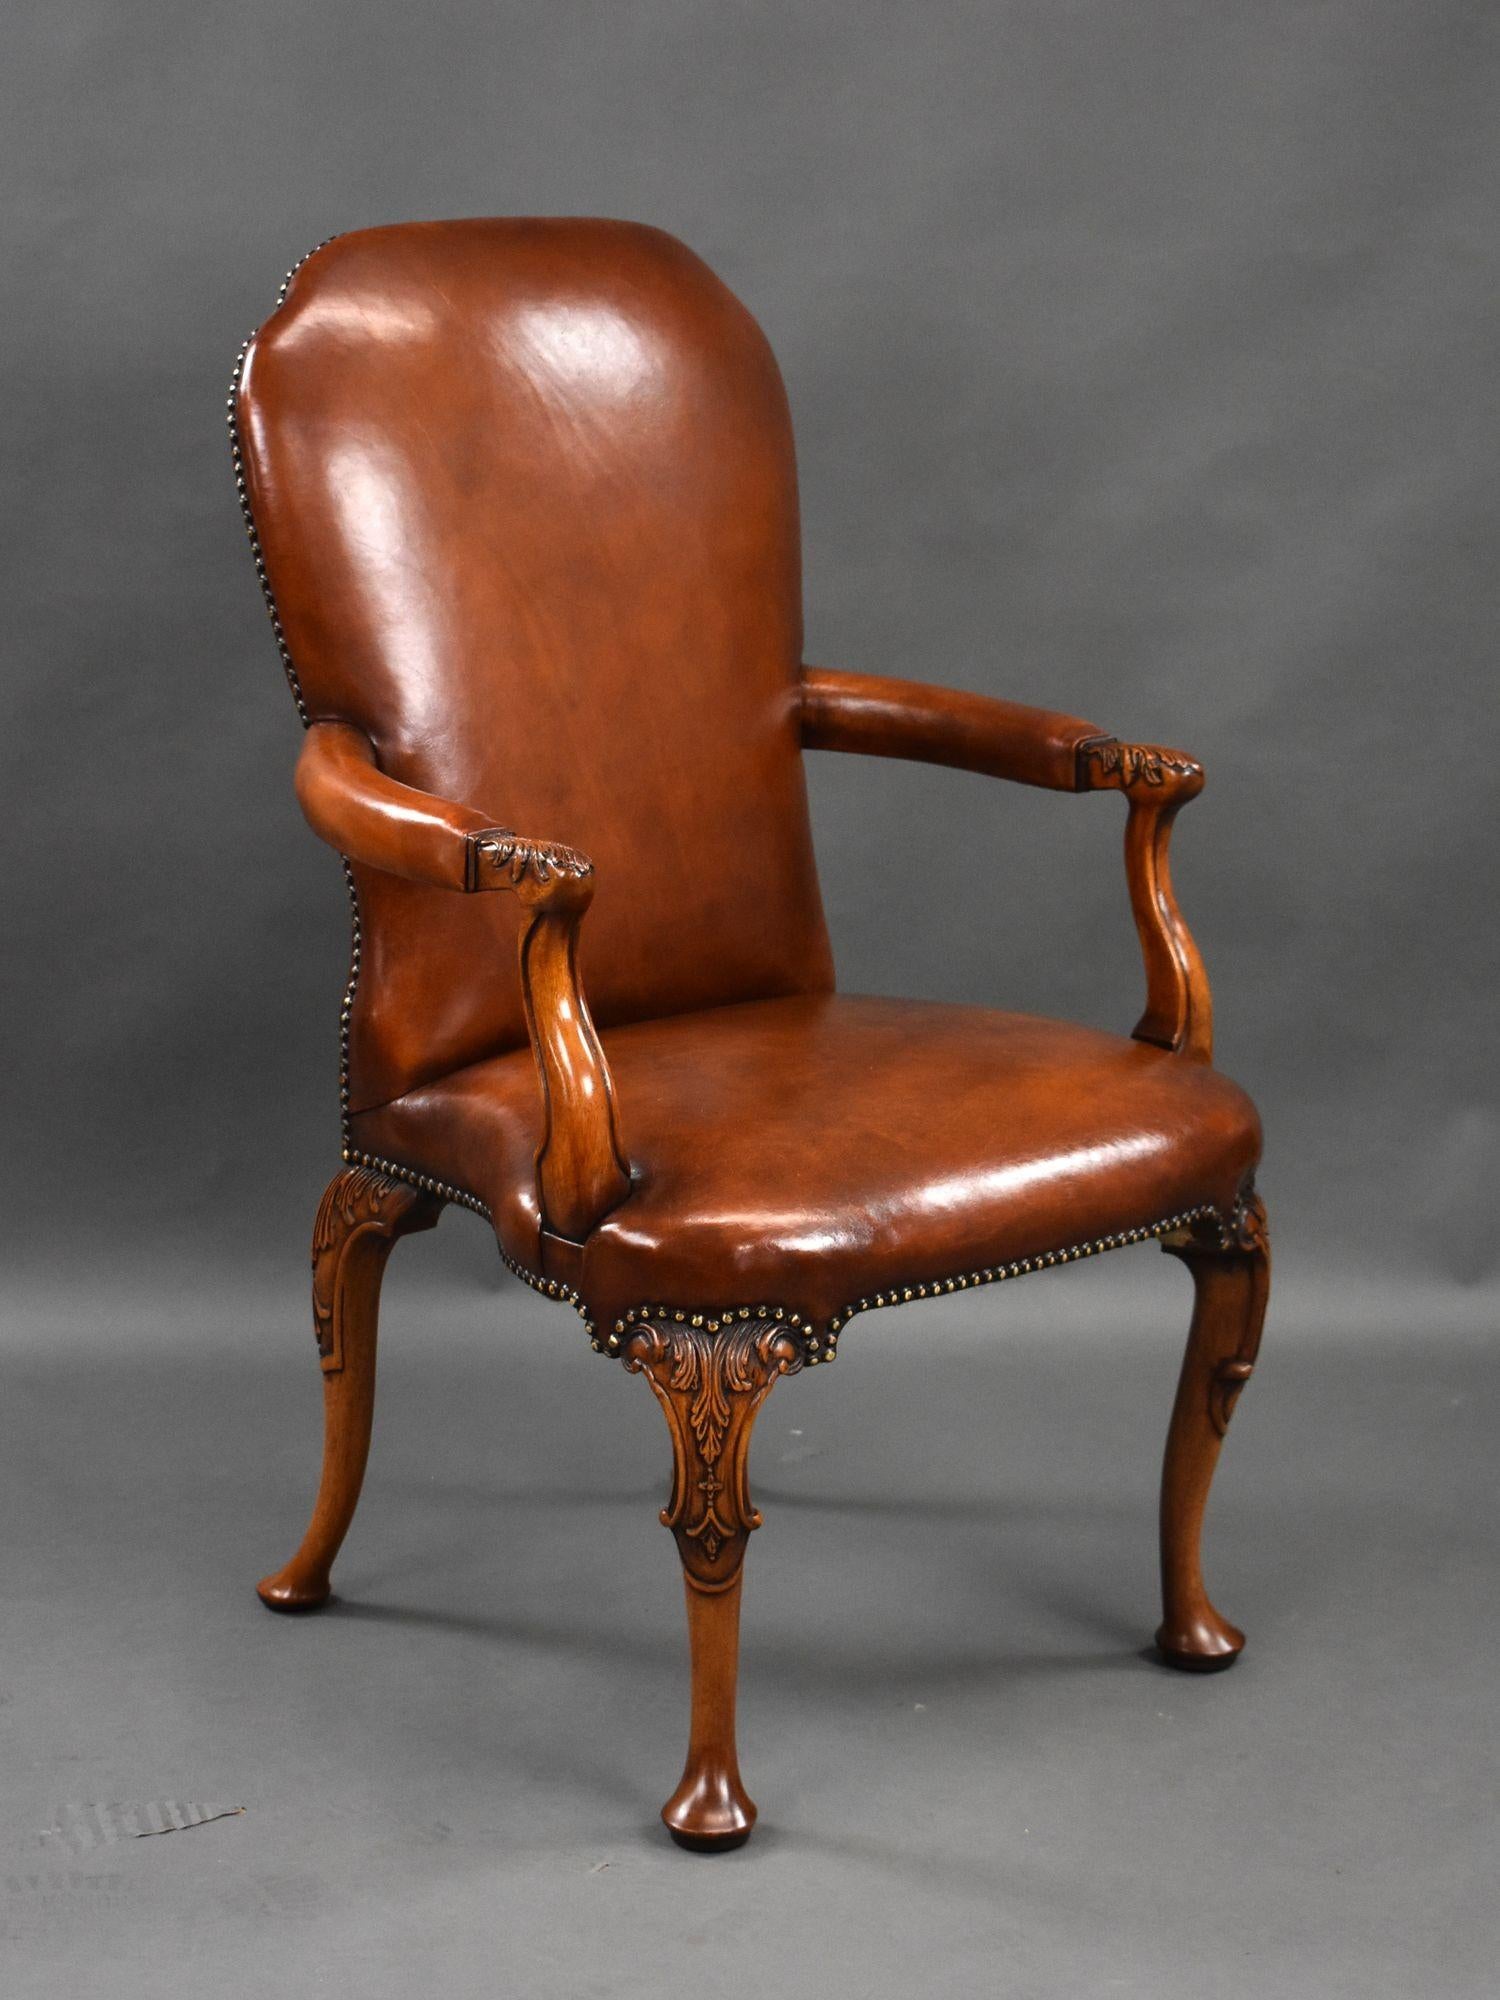 Nous proposons à la vente un ensemble de 7 fauteuils en cuir teint à la main de bonne qualité. Chaque fauteuil est doté d'accoudoirs ouverts et repose sur des pieds cabriole sculptés. Chaque chaise est en excellent état. Peut être vendu par